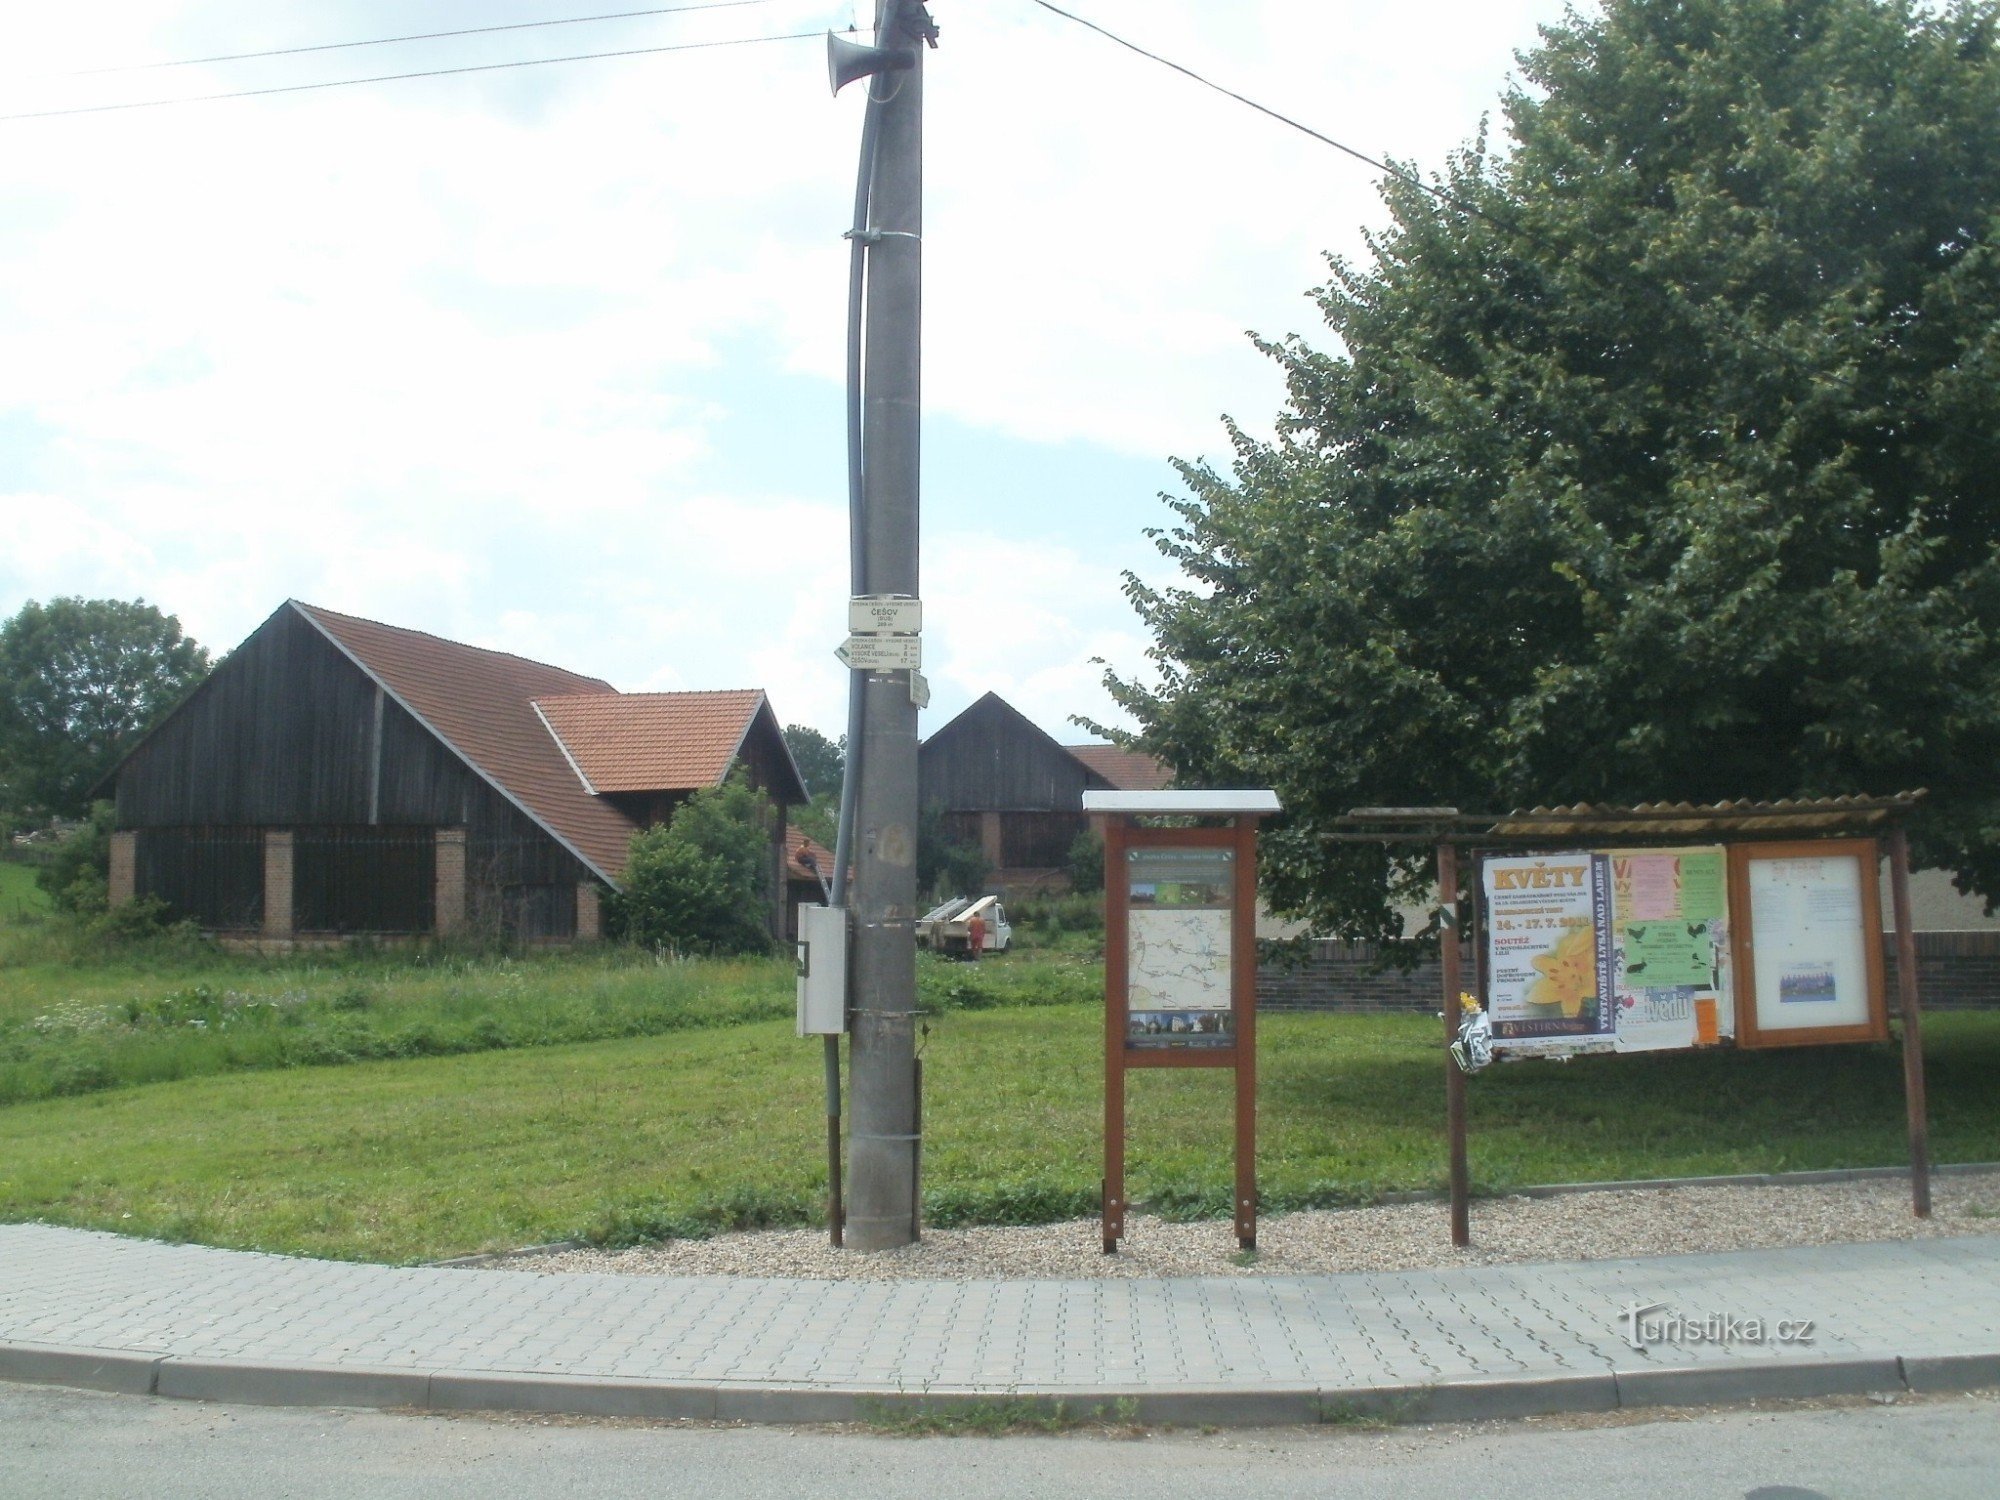 Intersecția de autobuz NS Češov-Vysoké Veselí - Češov